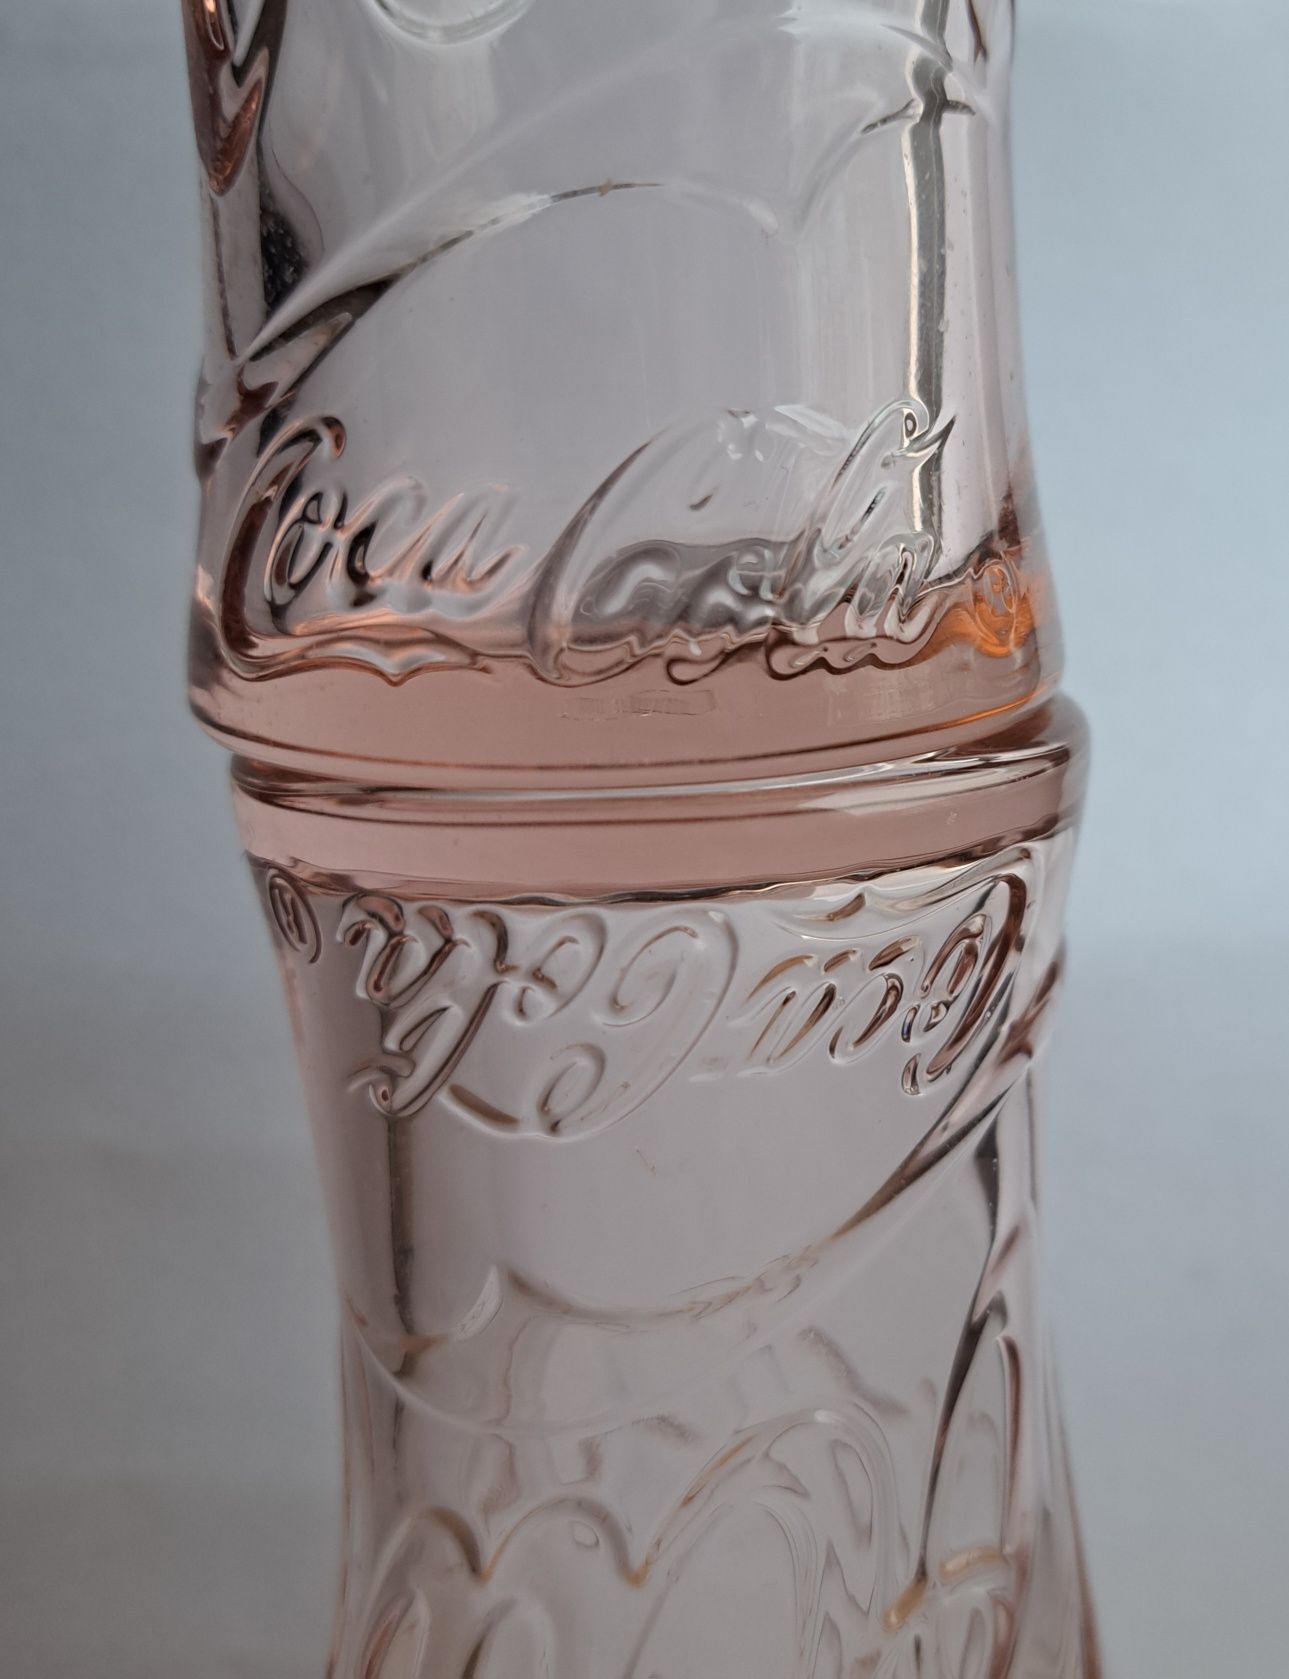 Szklanka Coca Cola szklanki.